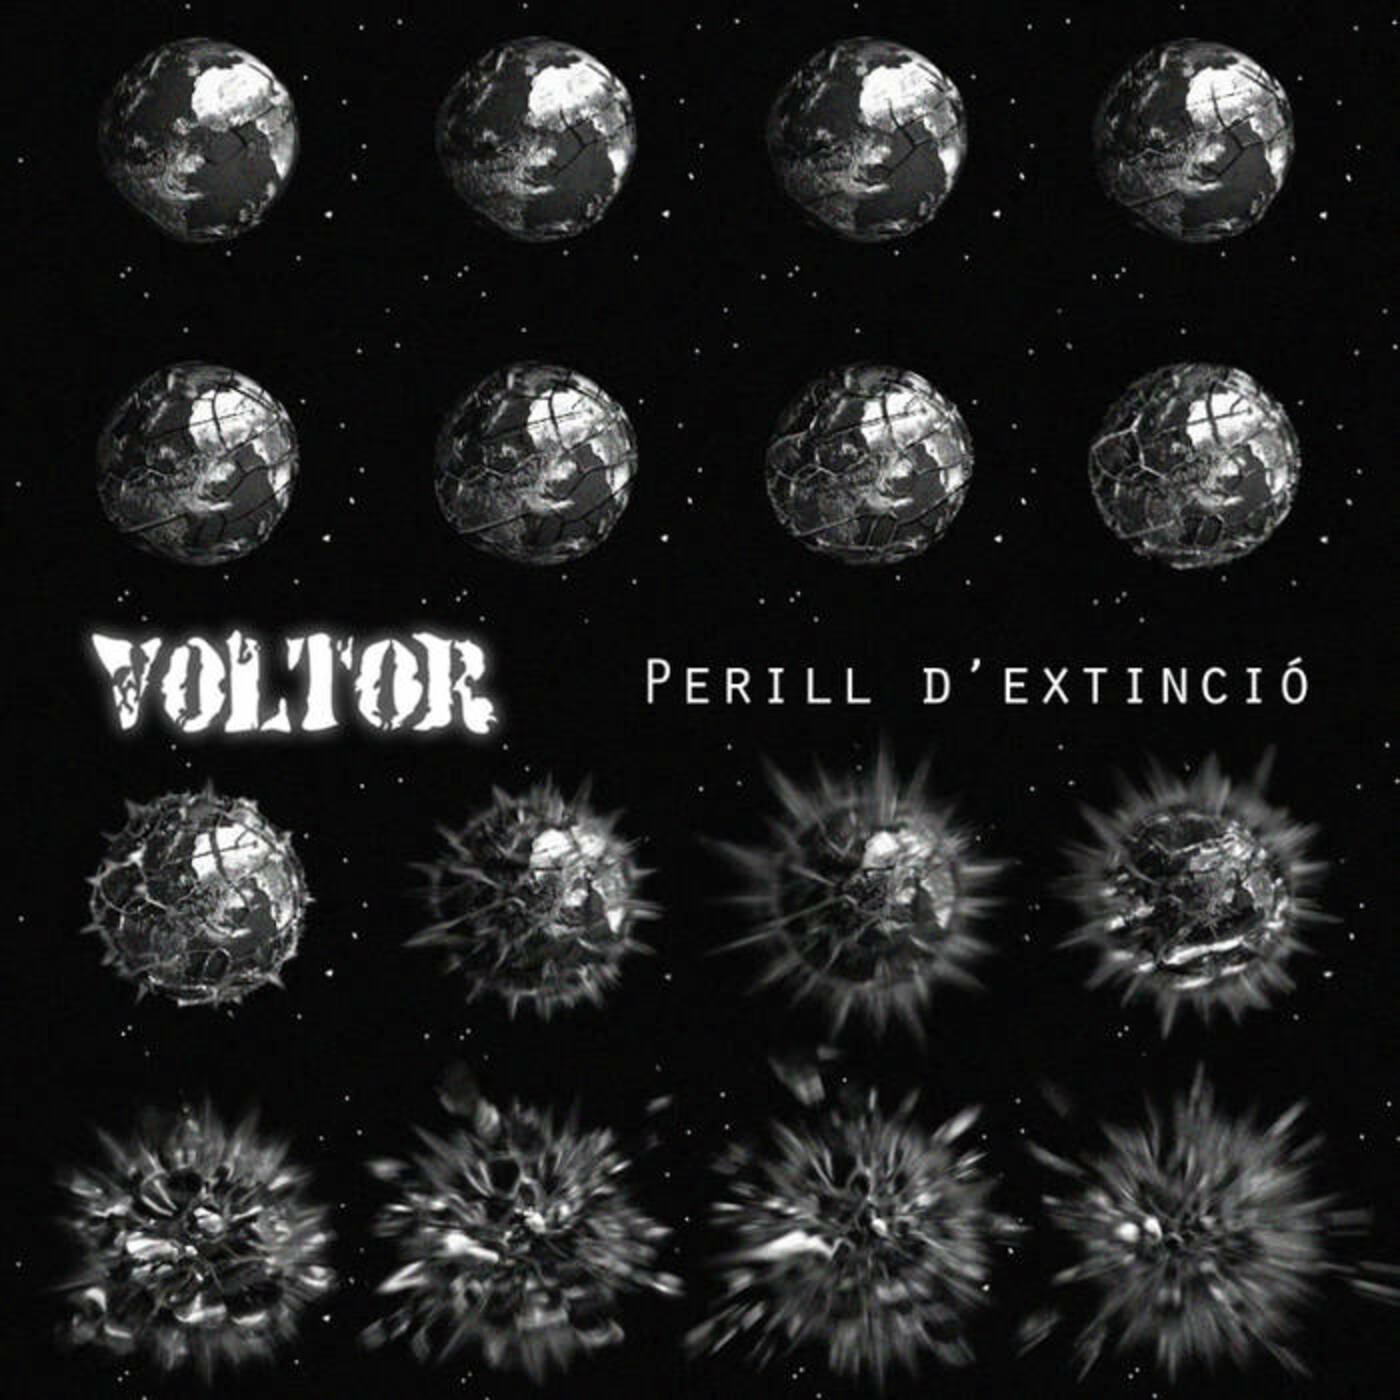 Voltor - Perill d'extinció | musica en valencià